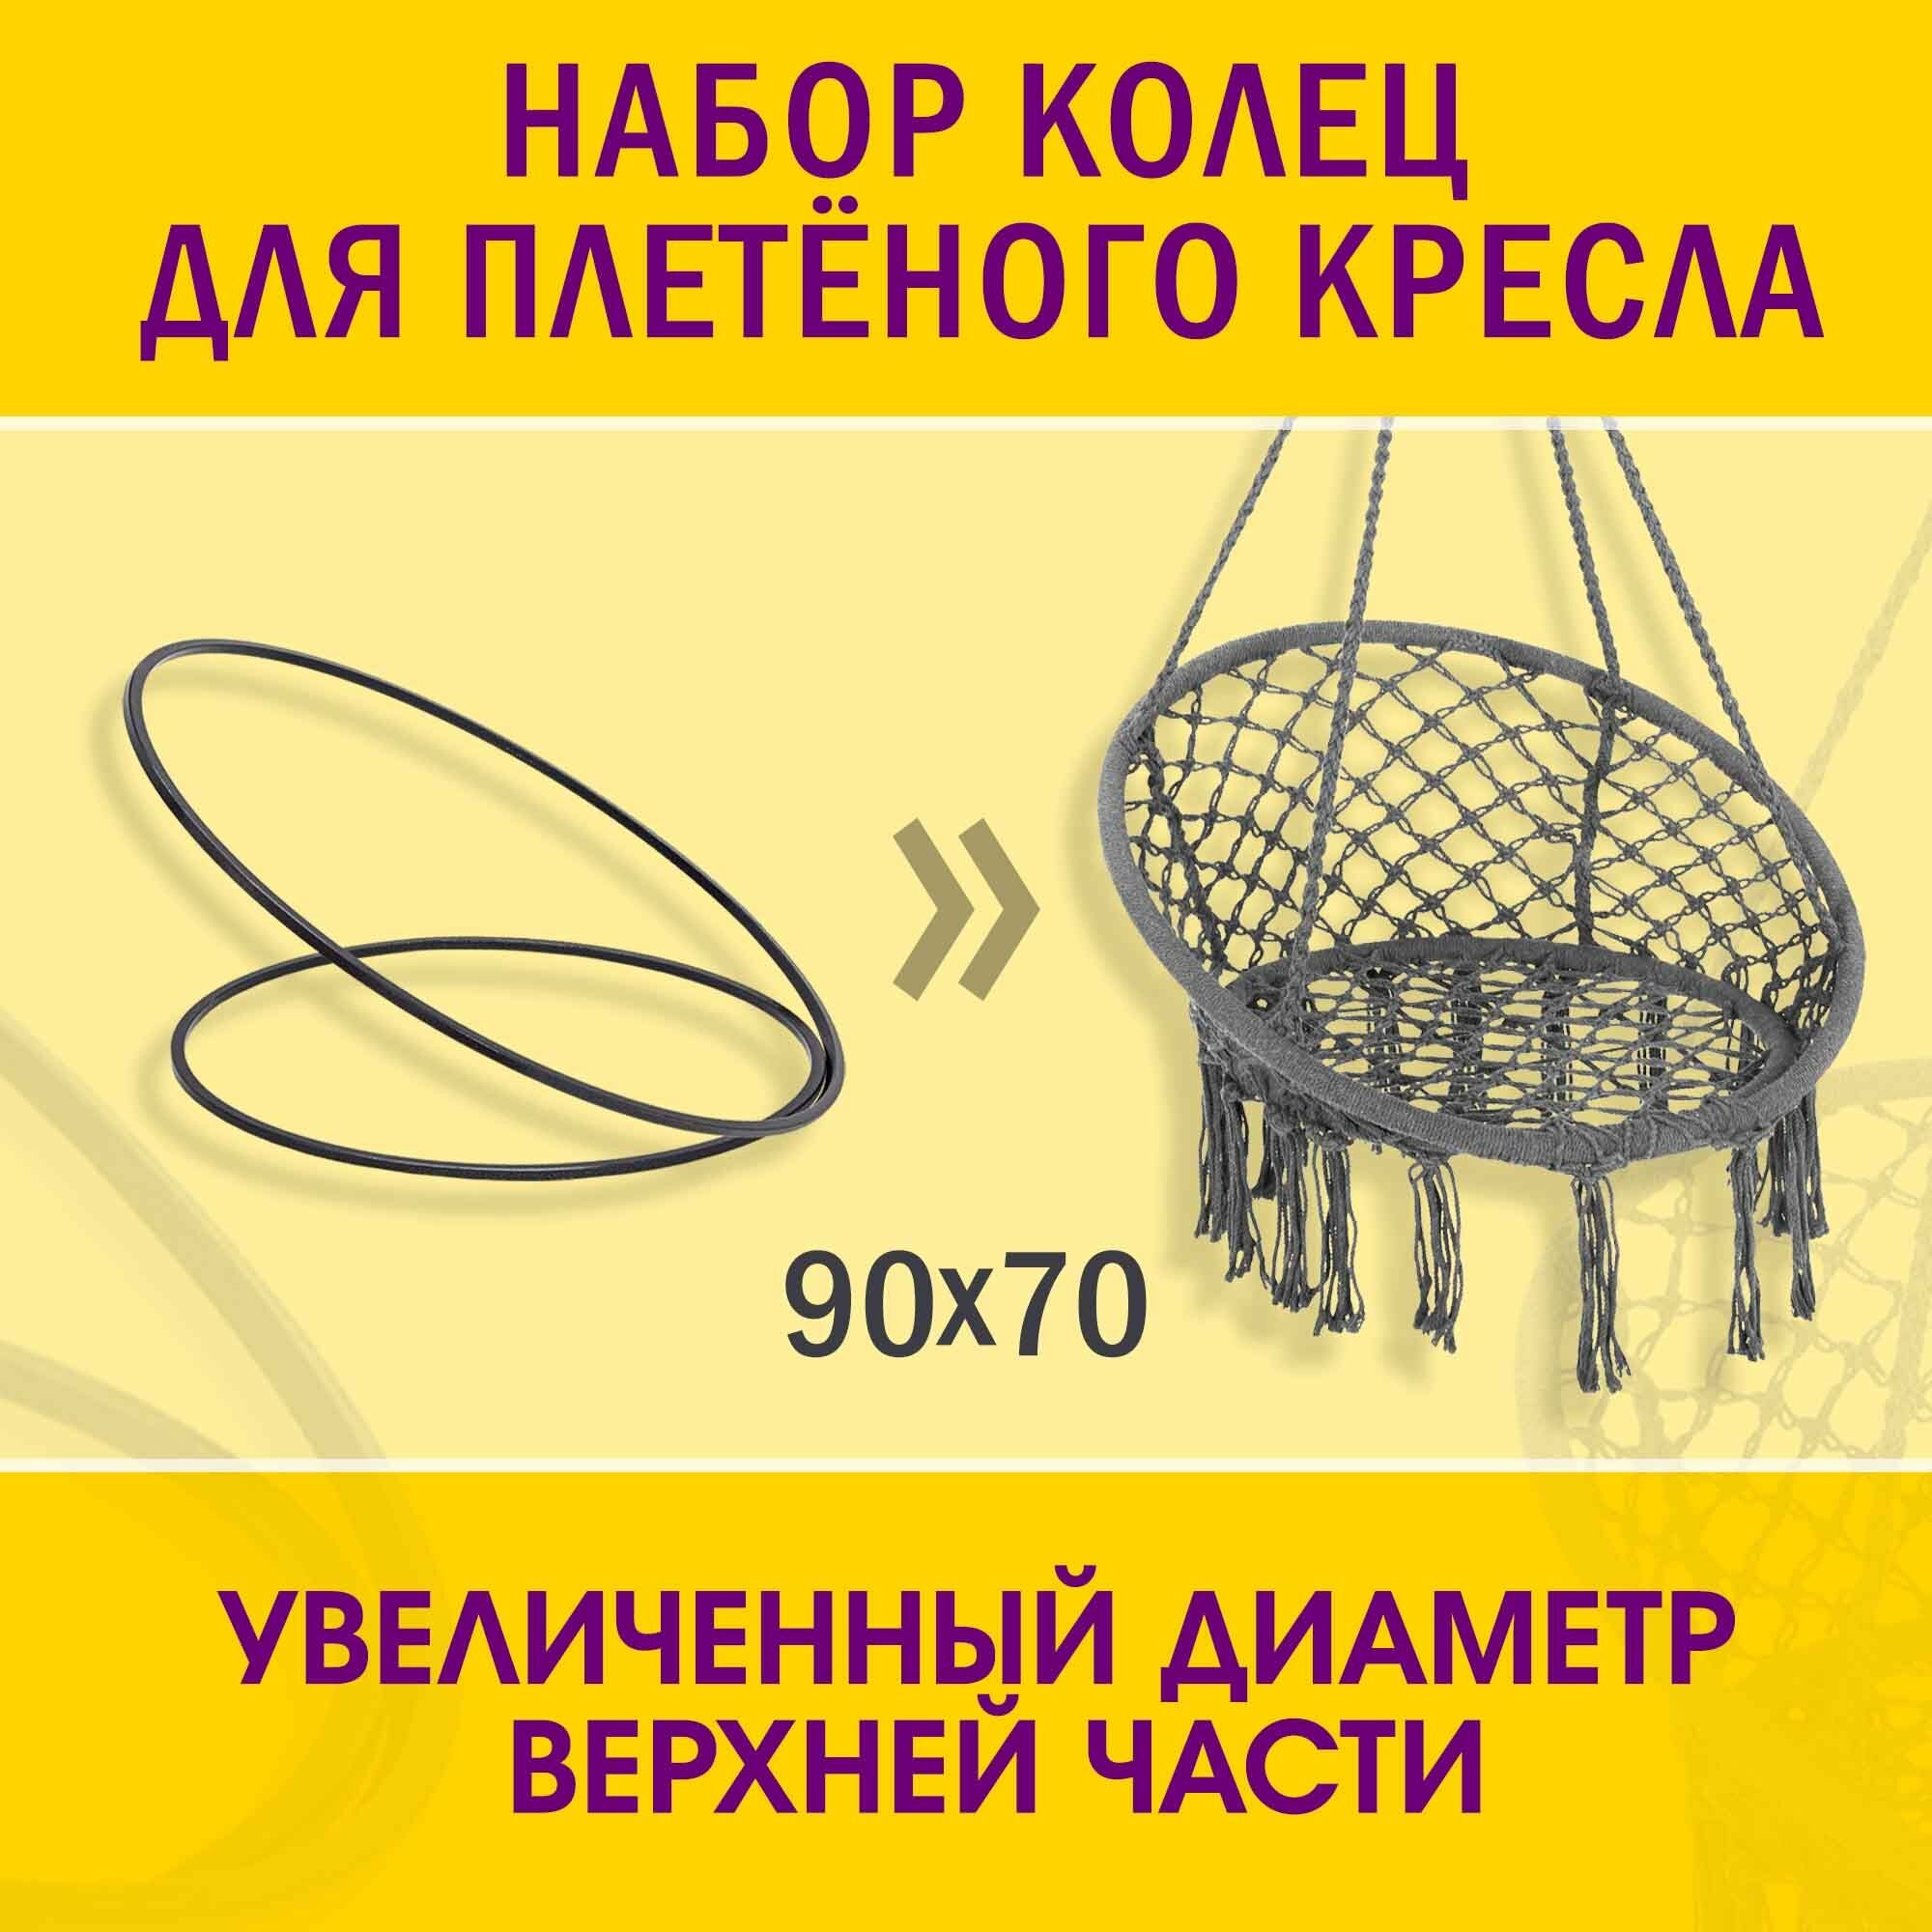 Металлические кольца (обручи) 70 и 90 см чёрного цвета для плетения подвесного кресла. Комплект (2 шт.) для гамака садовых качелей.